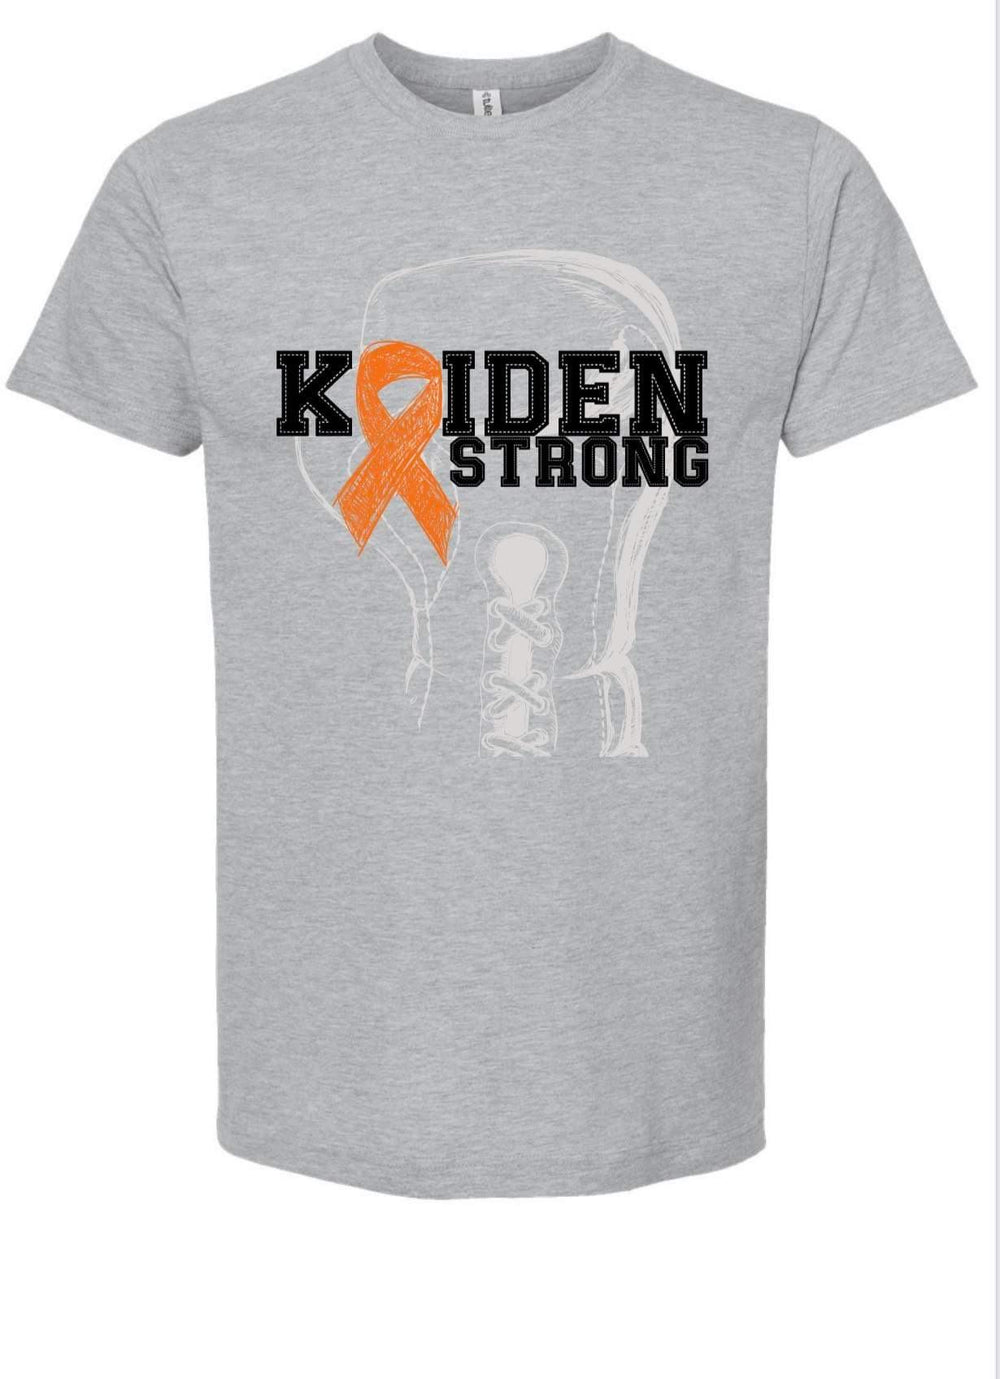 Kaiden Strong preorder